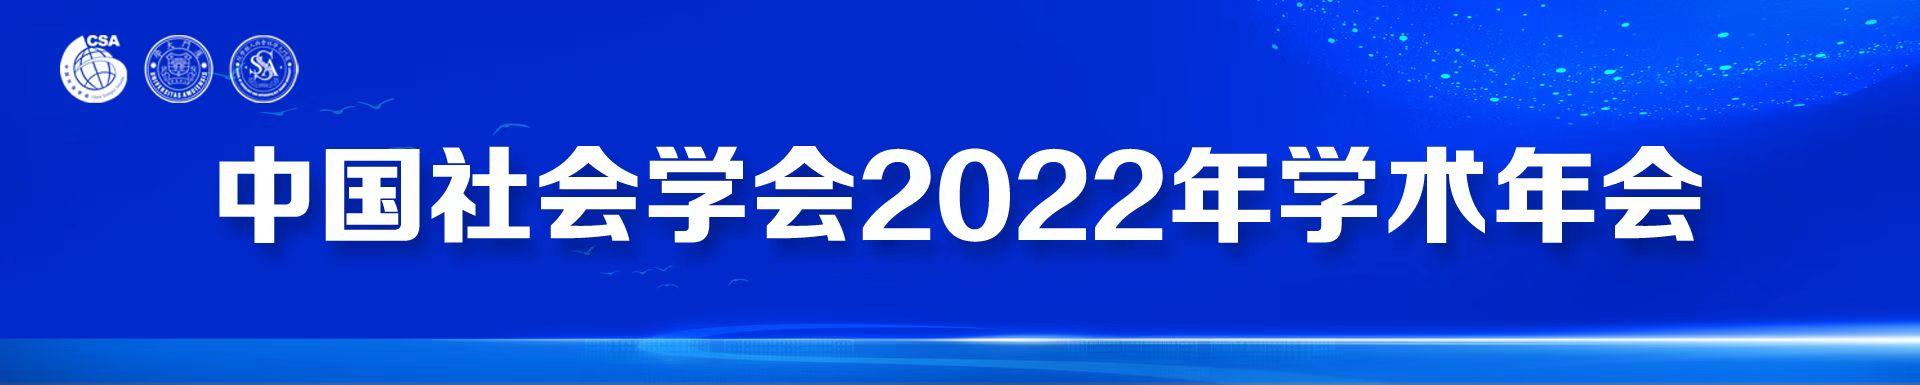 中国社会学会2022年学术年会